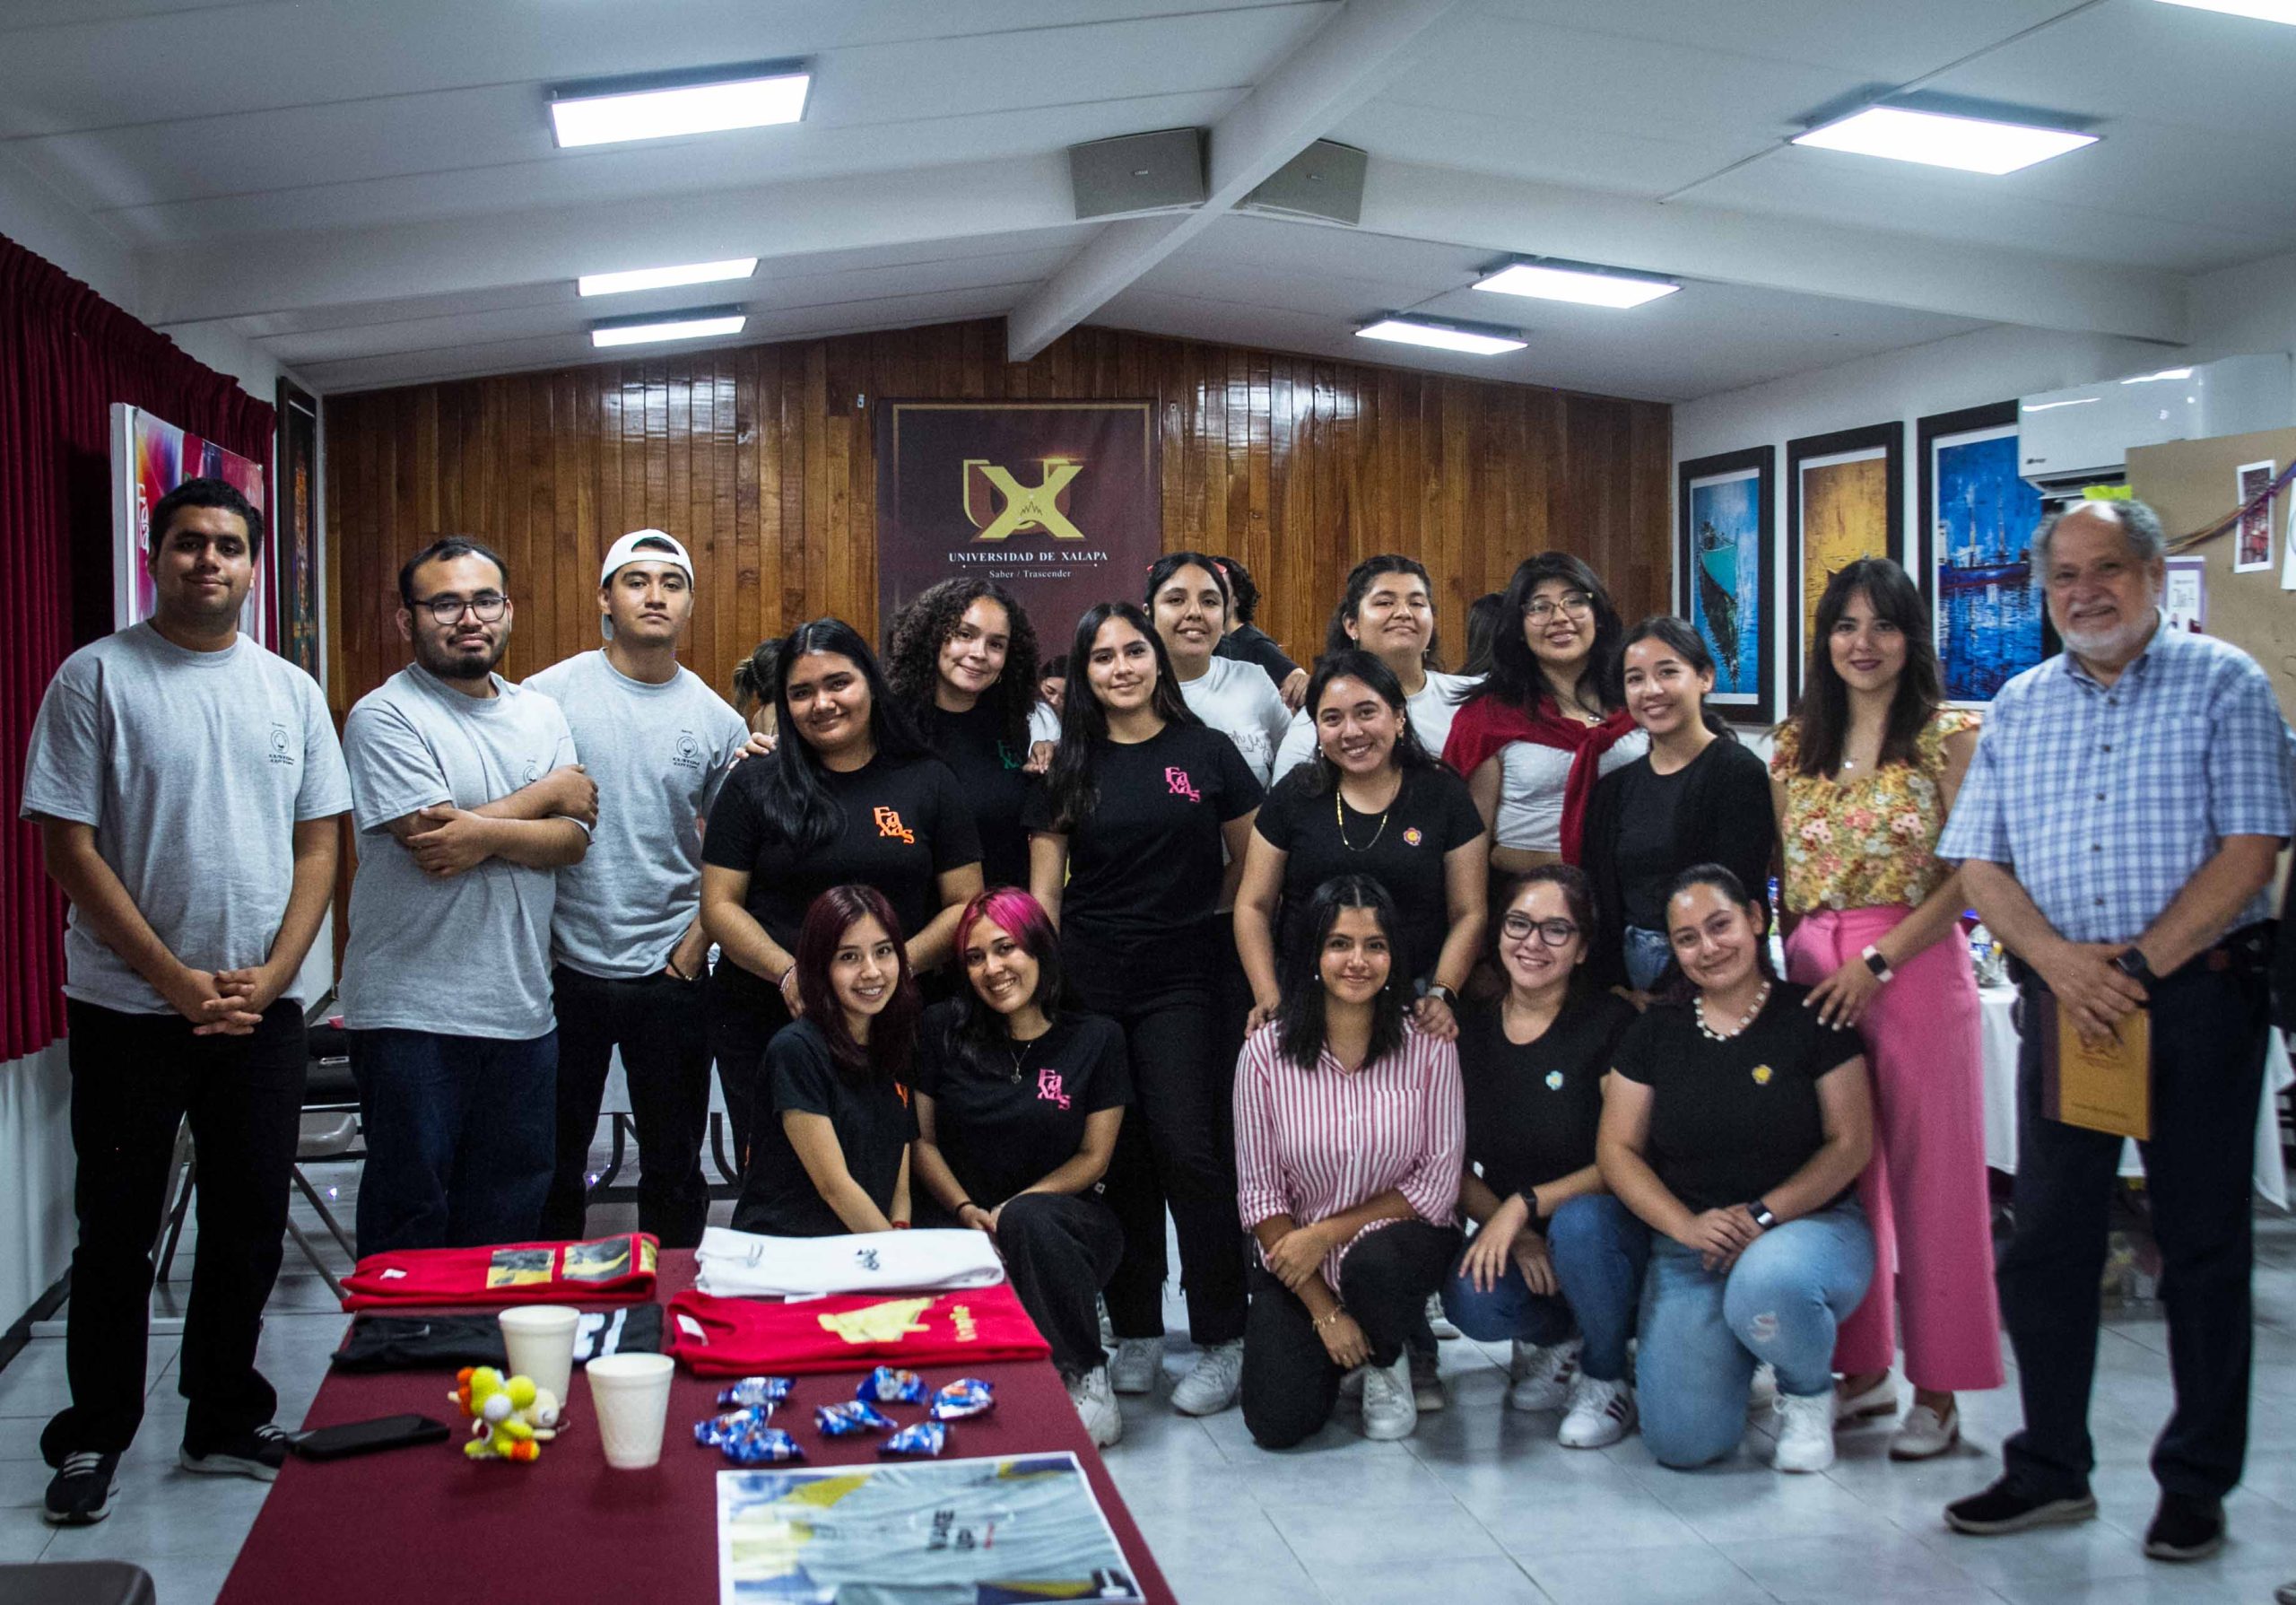 Genial exposición de emprendimientos en el Diseño Gráfico en la Universidad de Xalapa